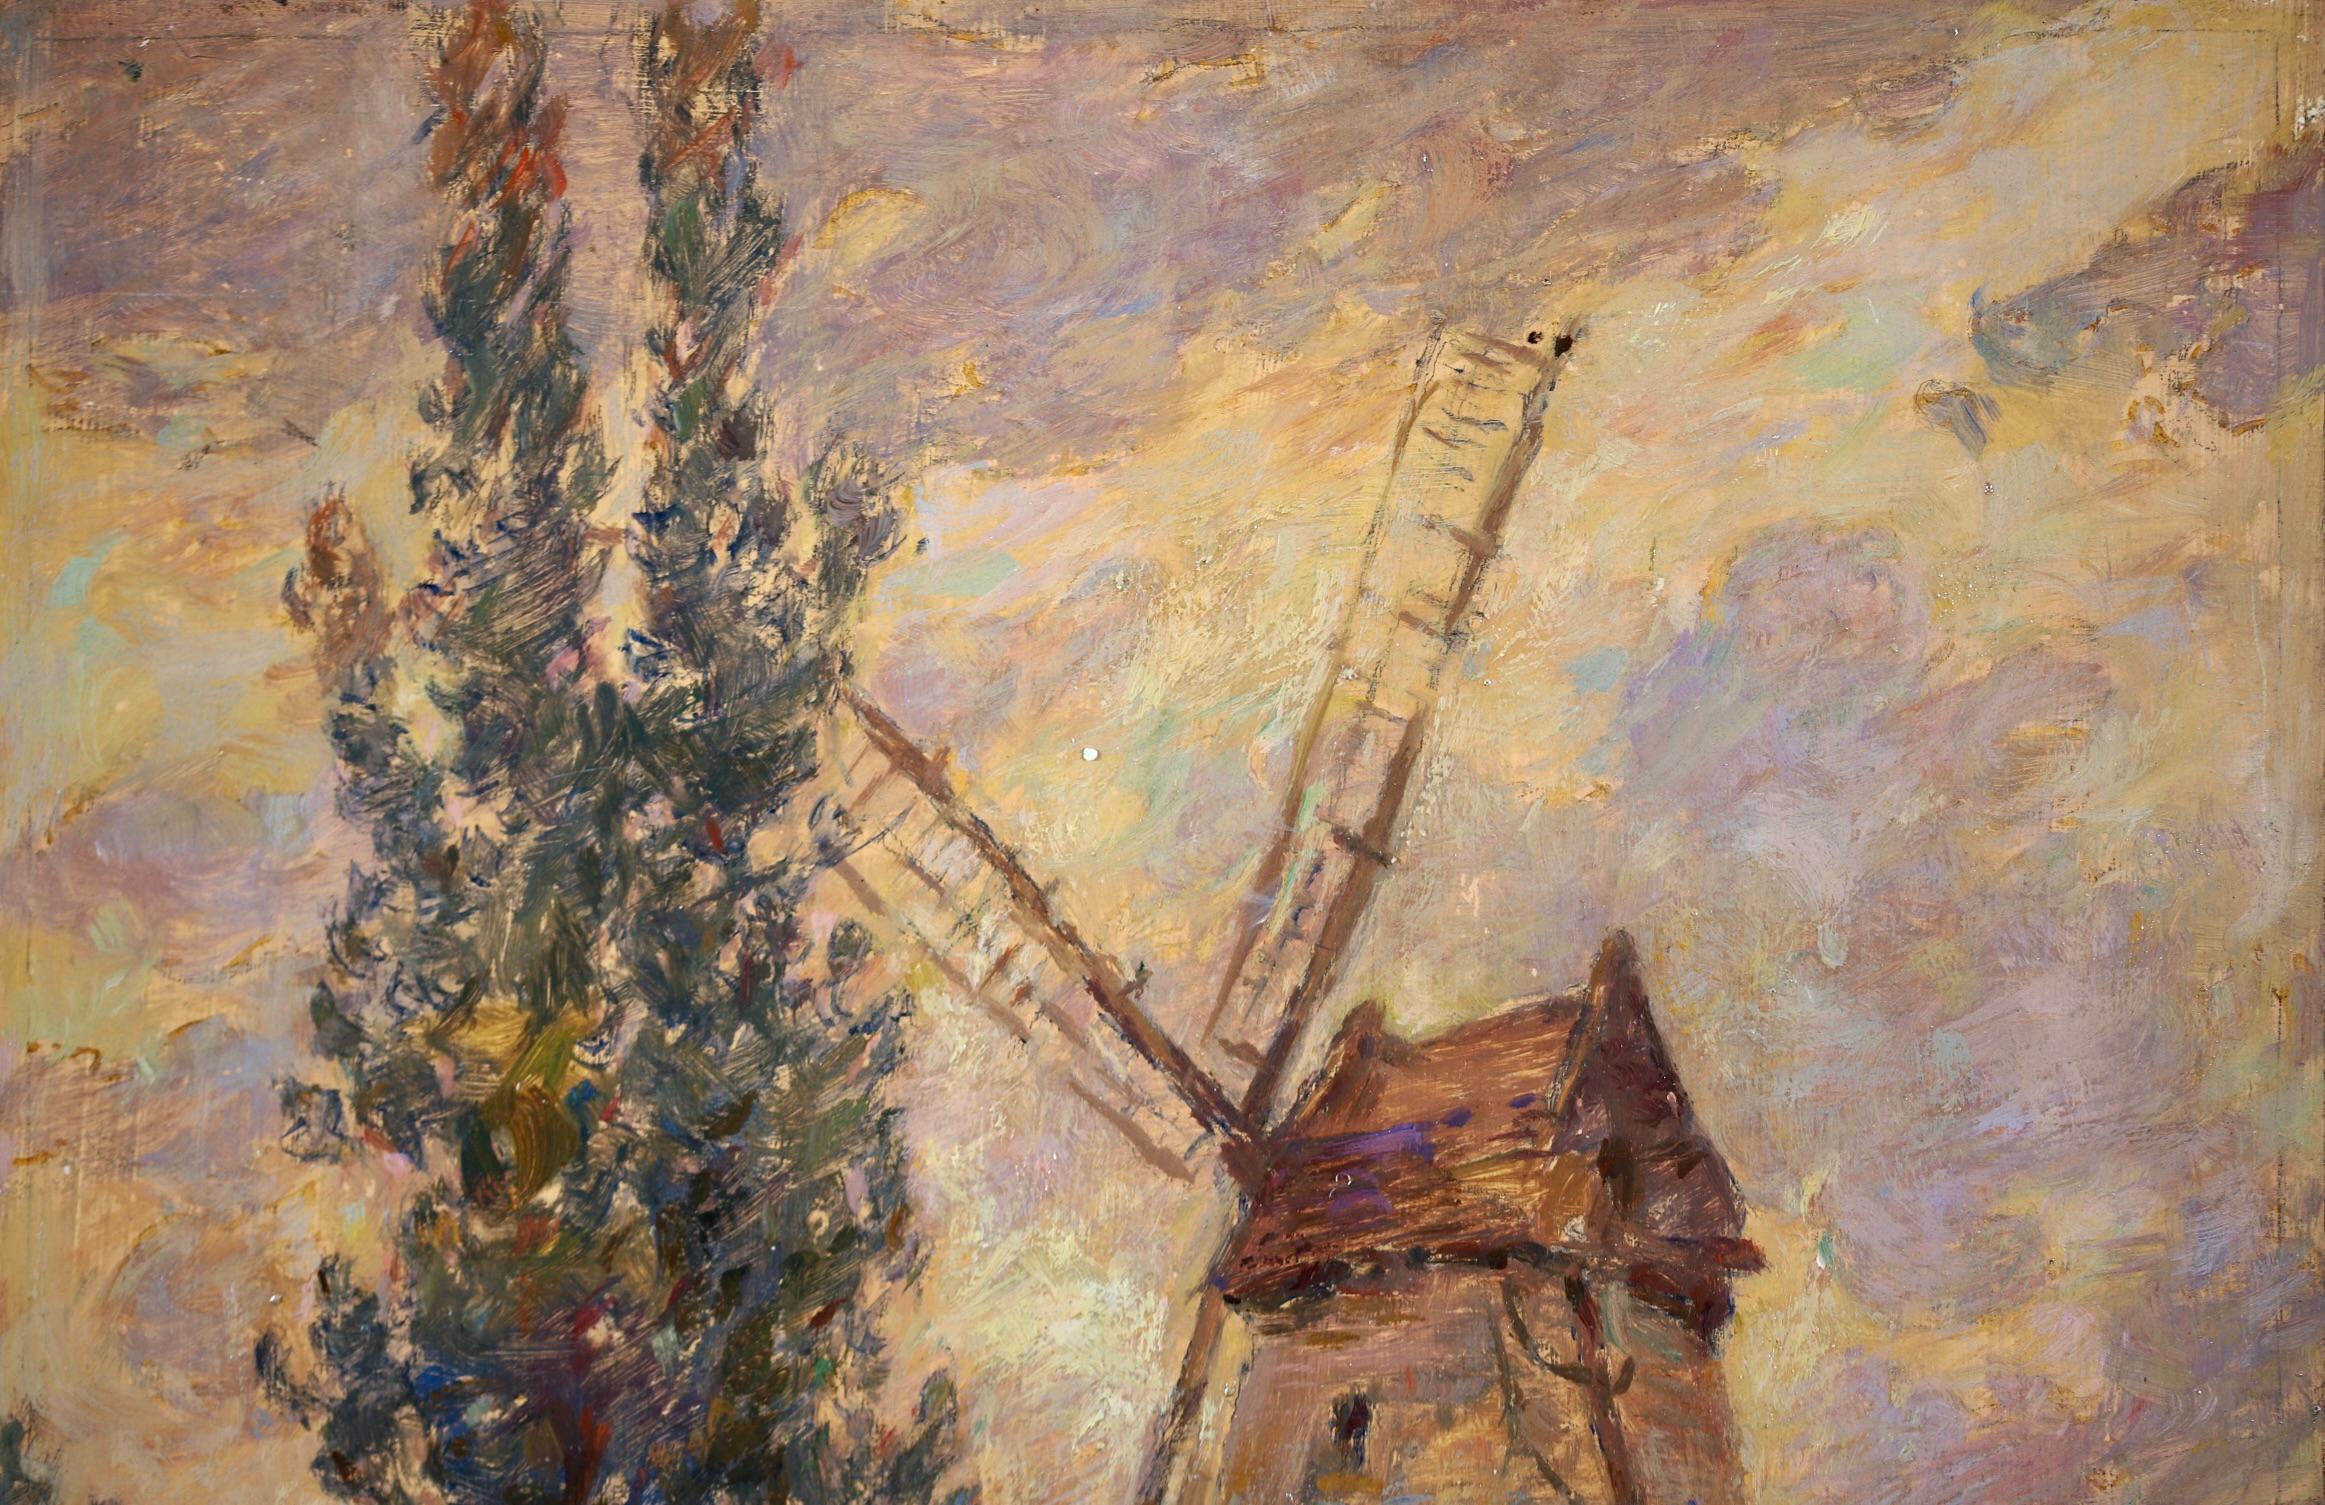 Moulin - Impressionist Oil, Windmill, Figures & Dog in Landscape by Henri Duhem 6